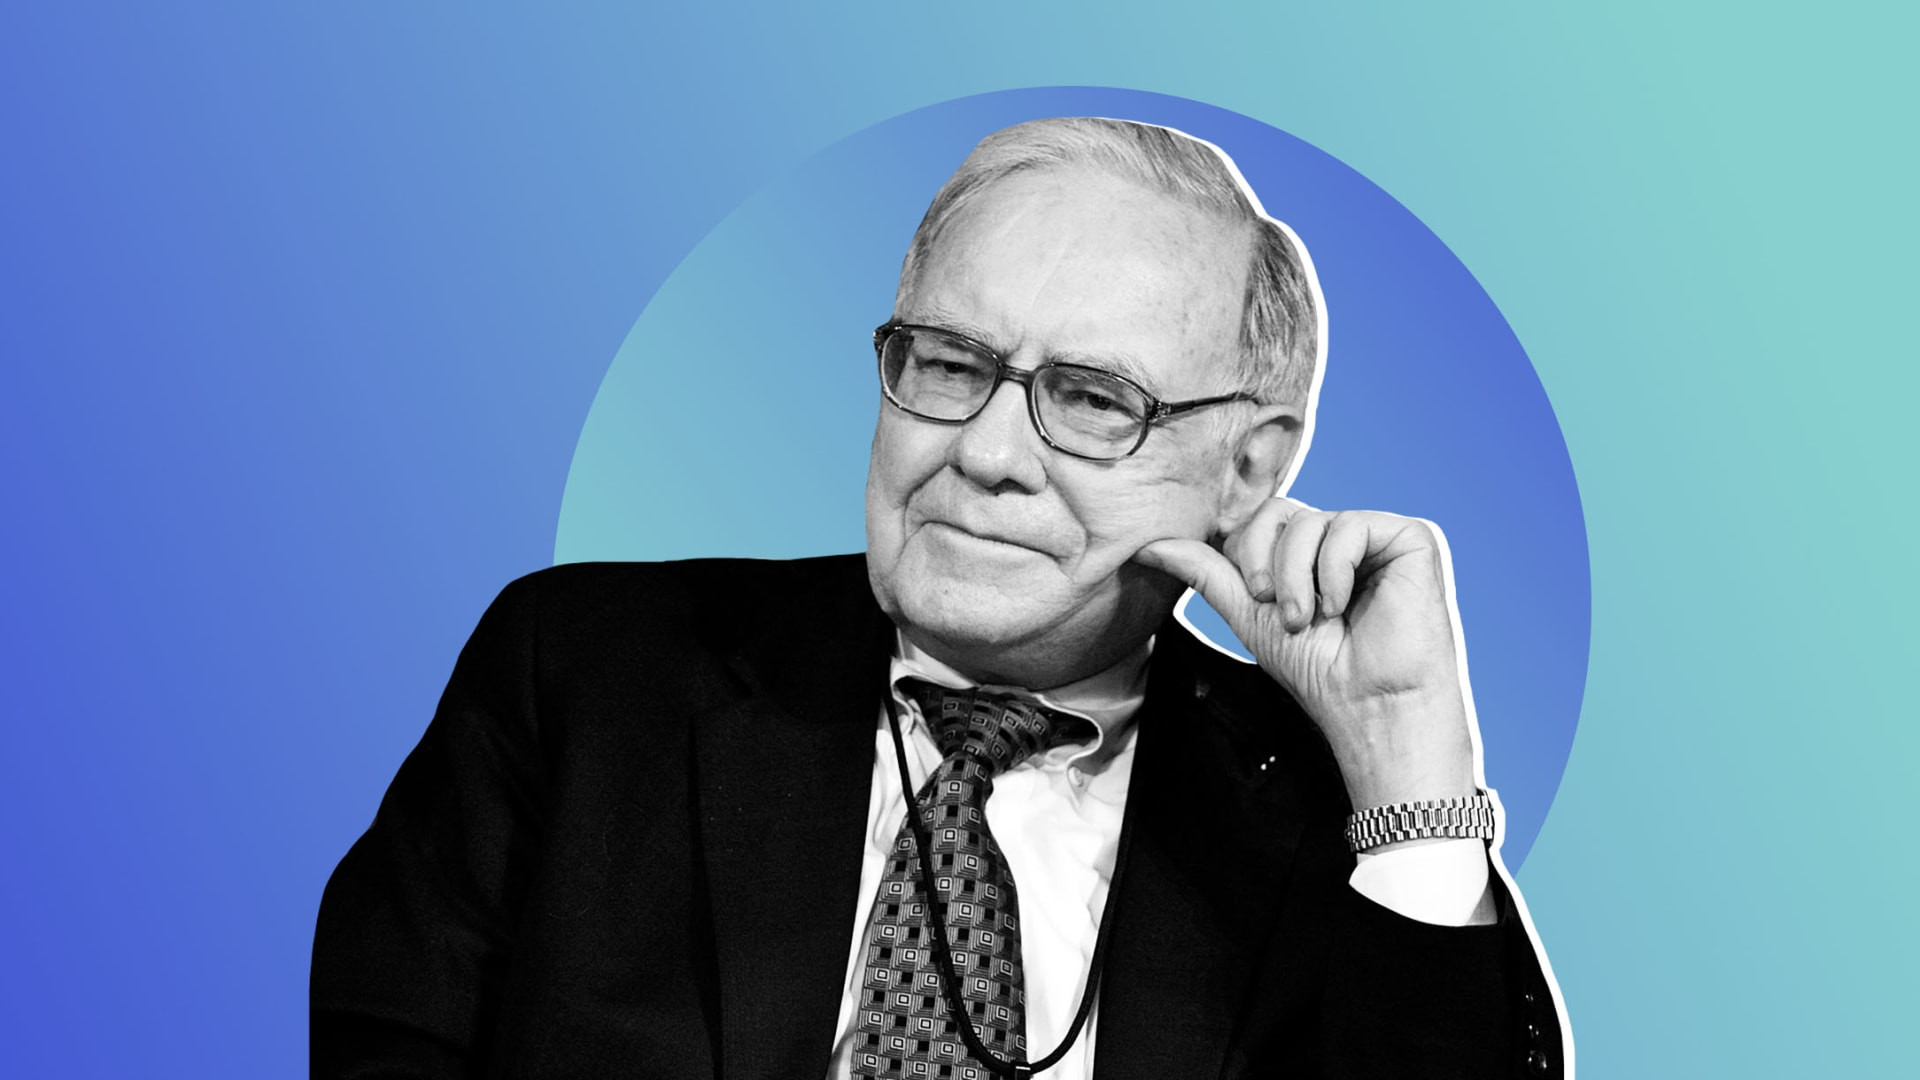 Tỷ phú Warren Buffett đưa ra 9 lời khuyên giúp đổi đời: Sống tiết kiệm và biết cân bằng lọt vào danh sách - Ảnh 1.